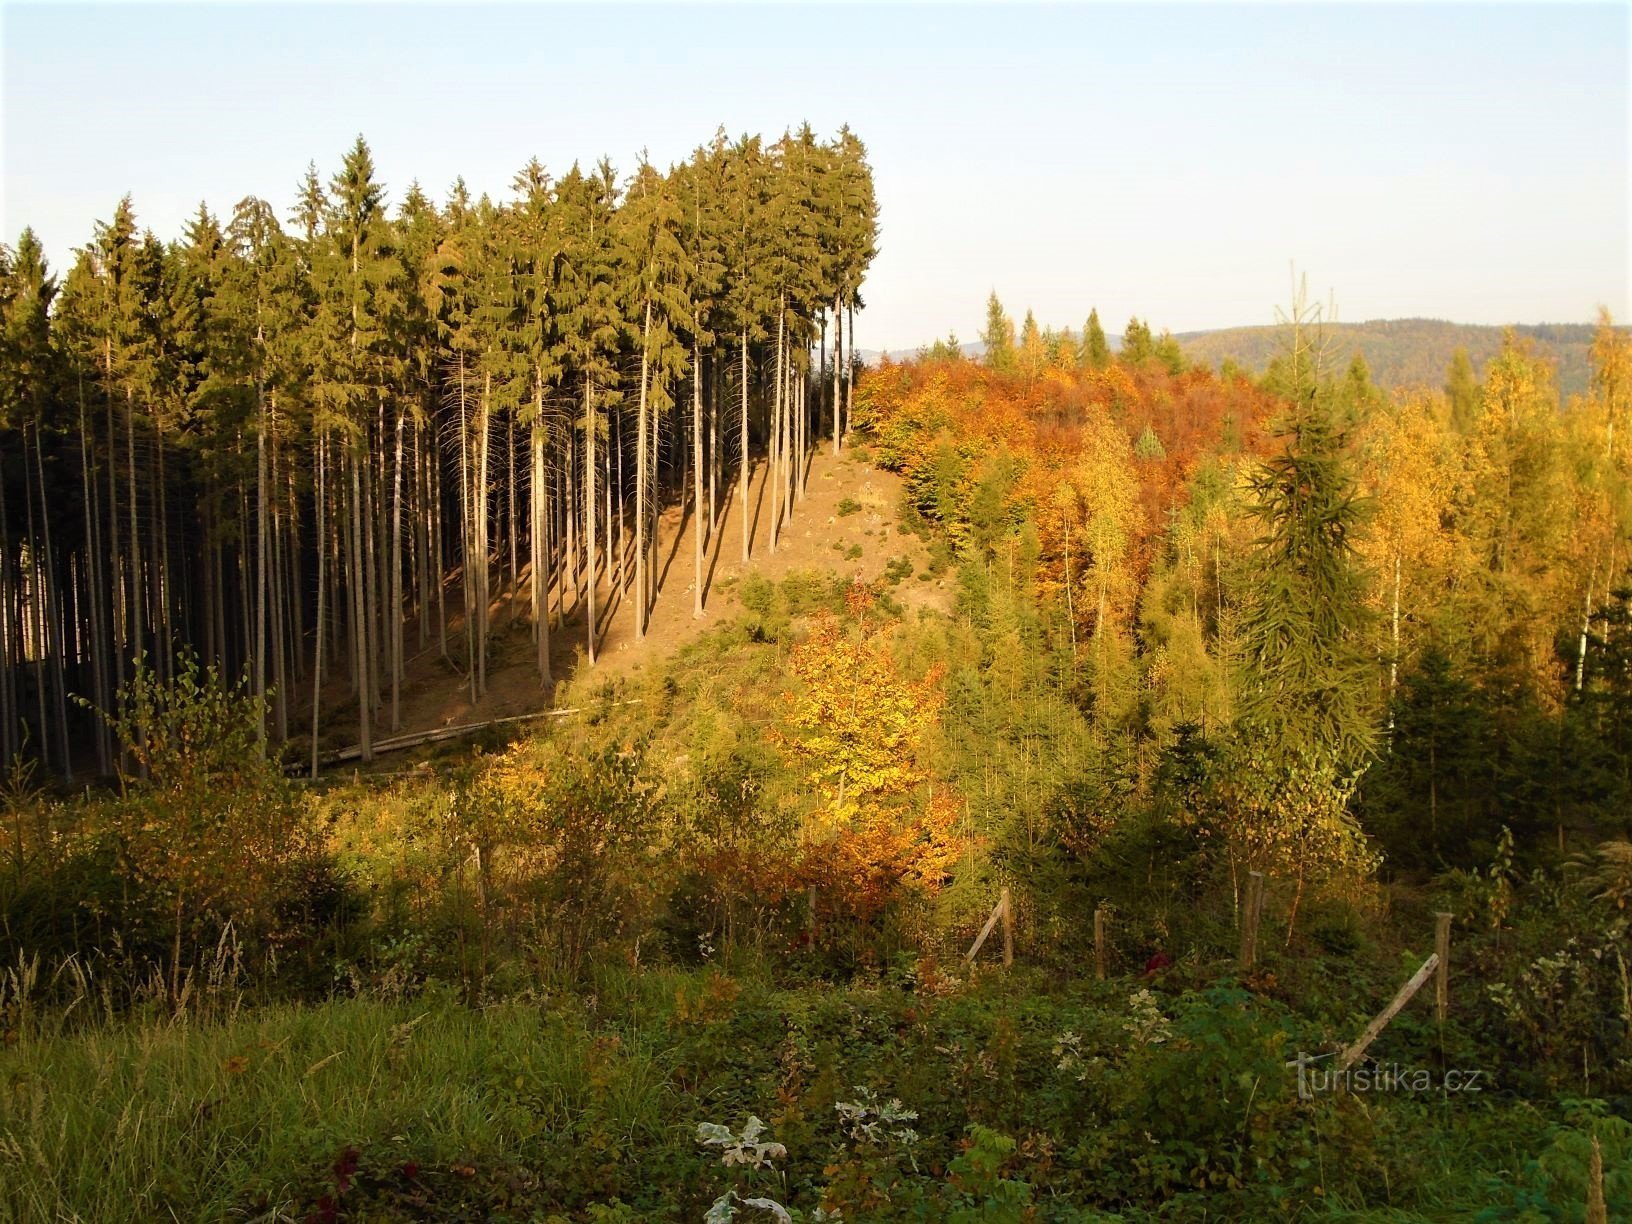 Lasy w pobliżu Spáleného kopce (Slatina nad Úpou, 17.10.2017)